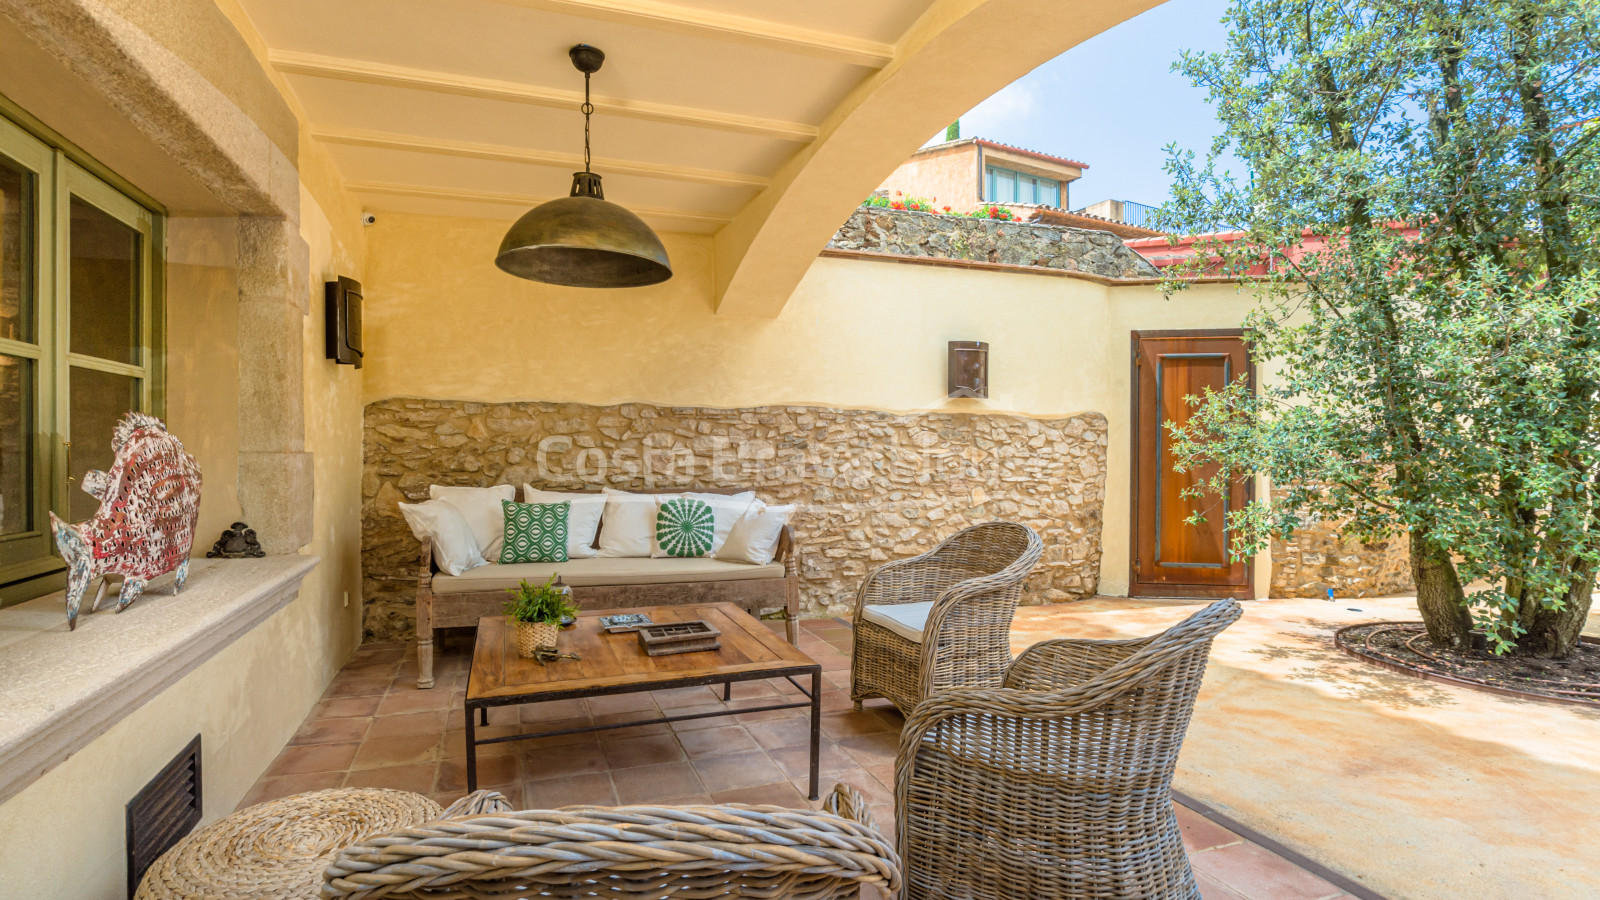 Casa de poble íntegrament reformada en venda a Begur amb 200 m² de pati amb piscina